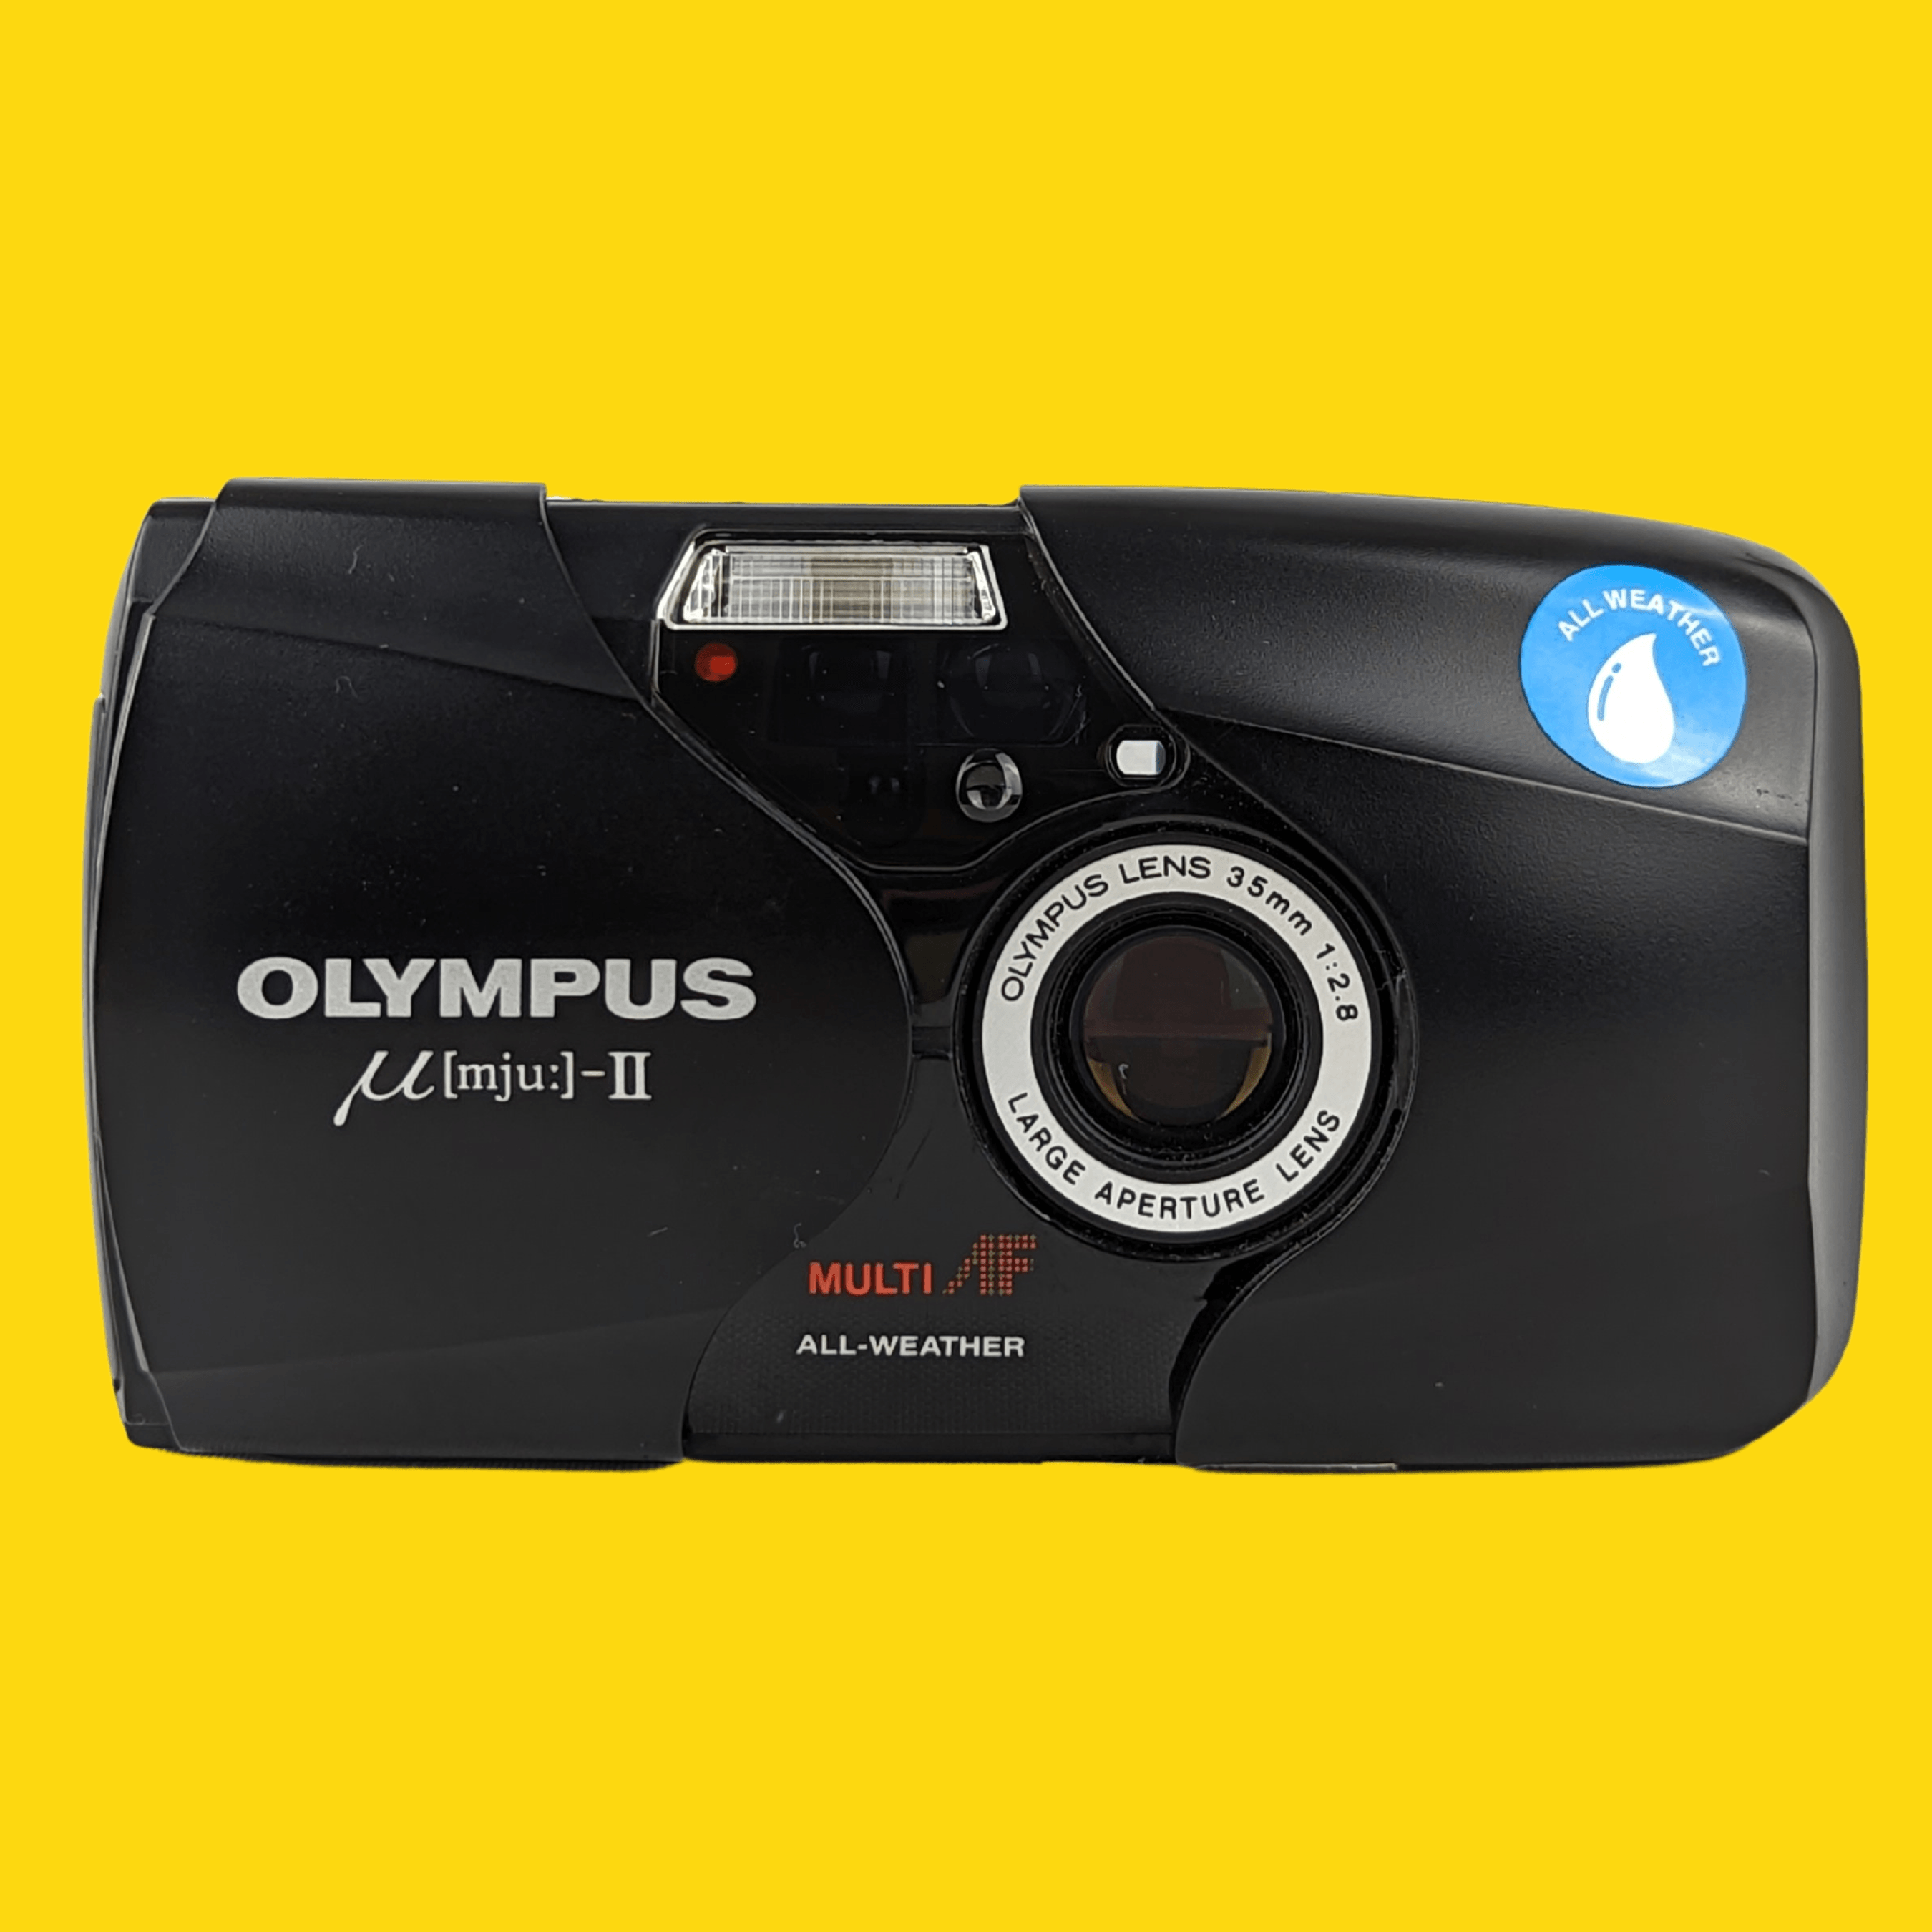 オリンパス Mju II 35mm フィルム カメラ ポイント アンド シュート